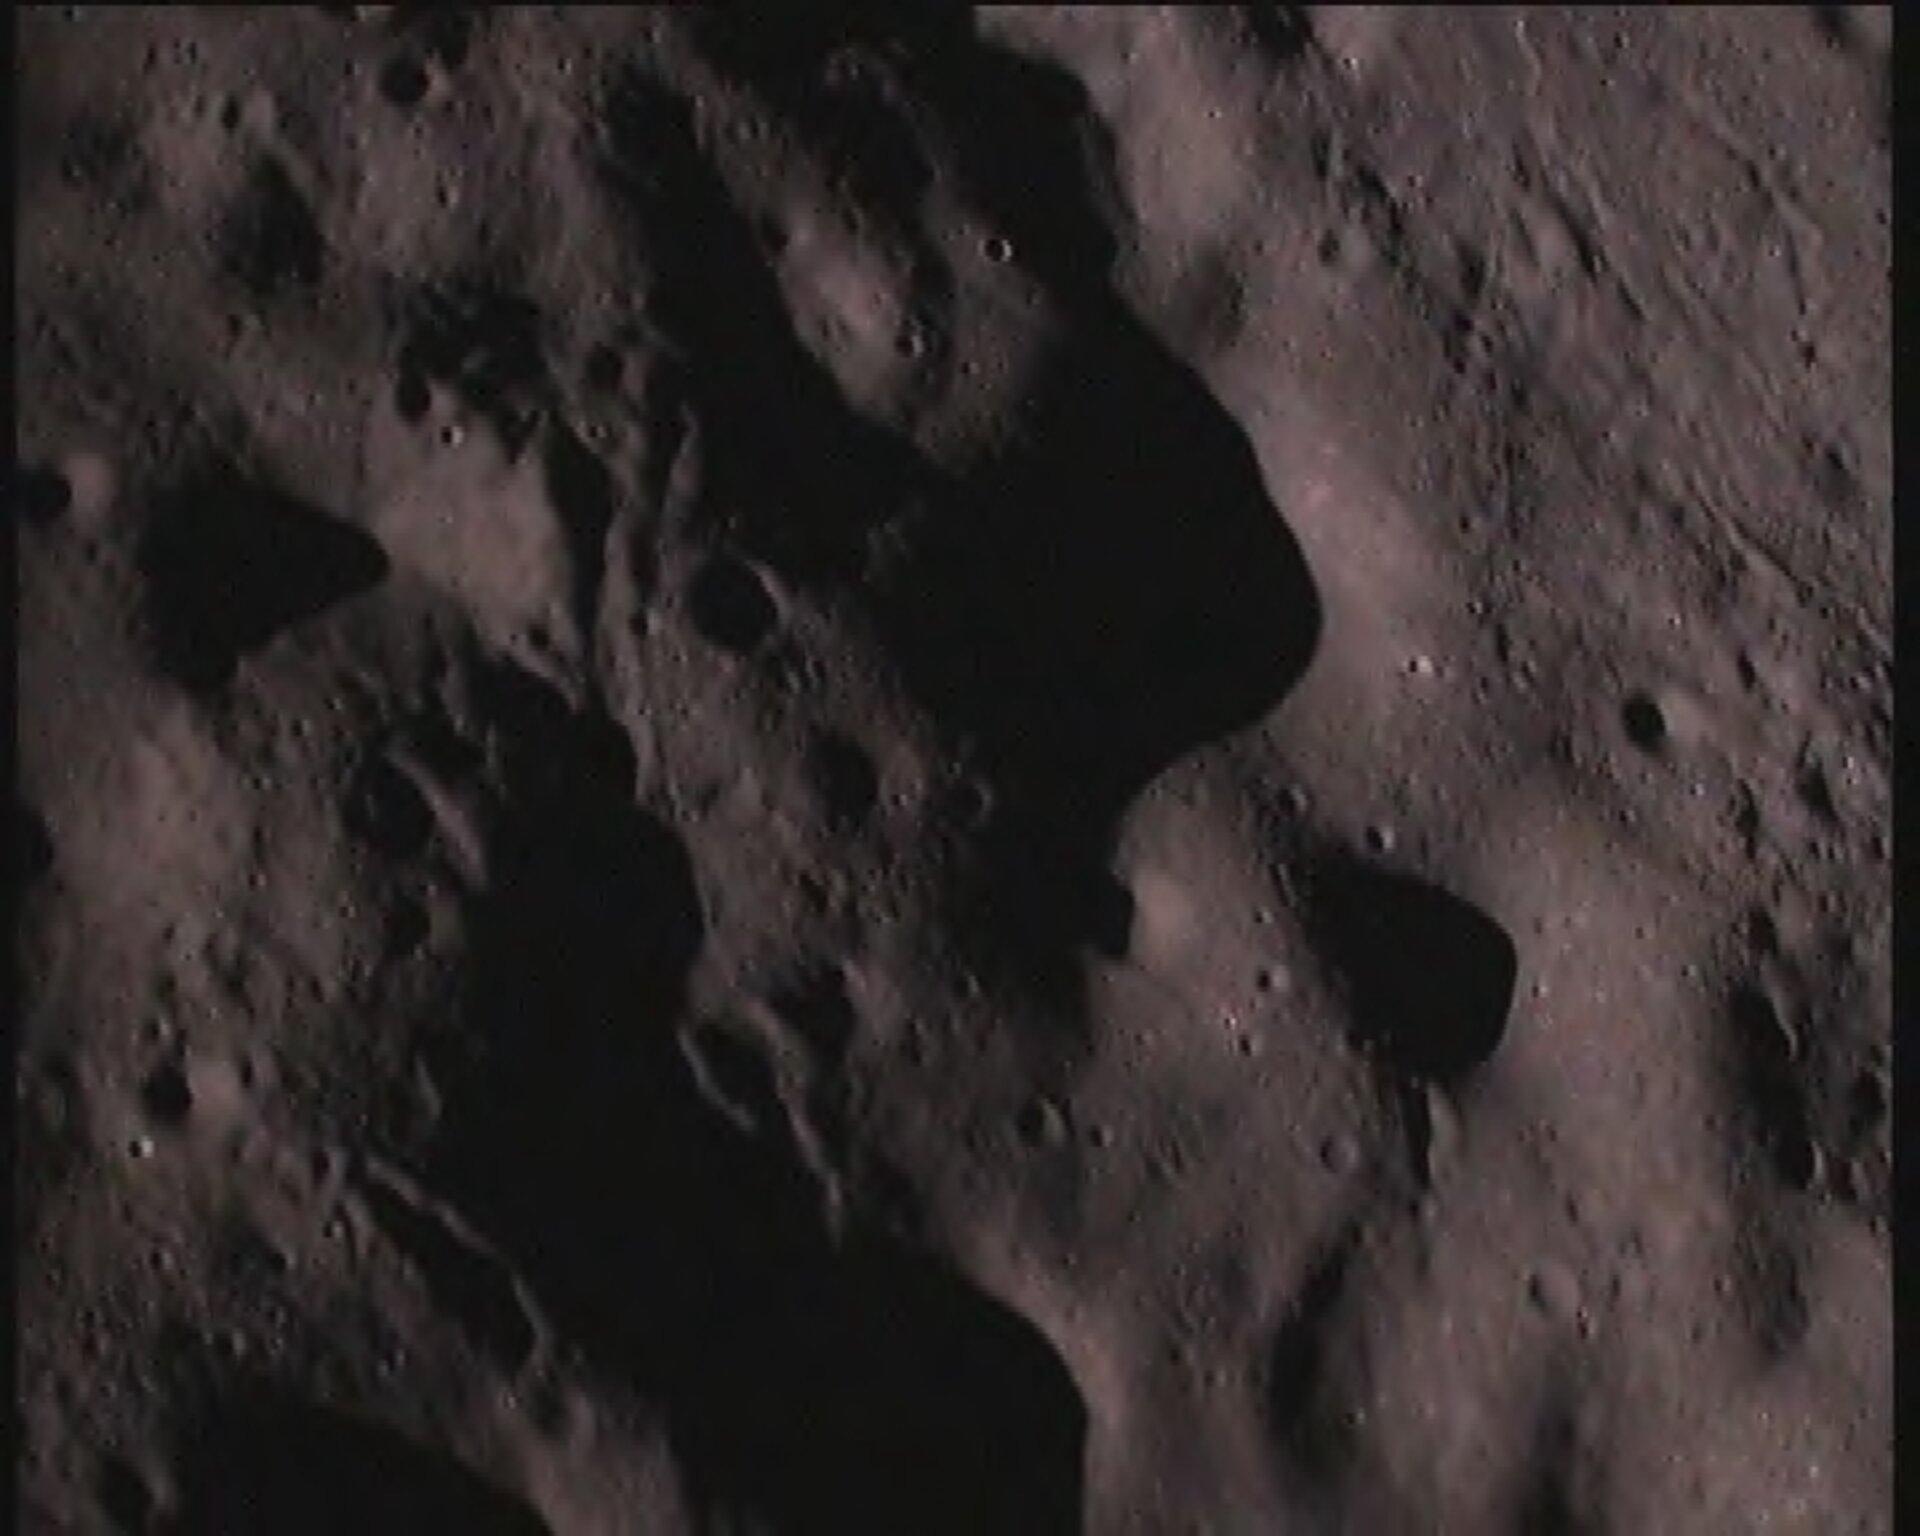 På sin väg ner mot månens sydpolsområde tog Chandrayaans nedslagsprob ett antal bilder av månytan.